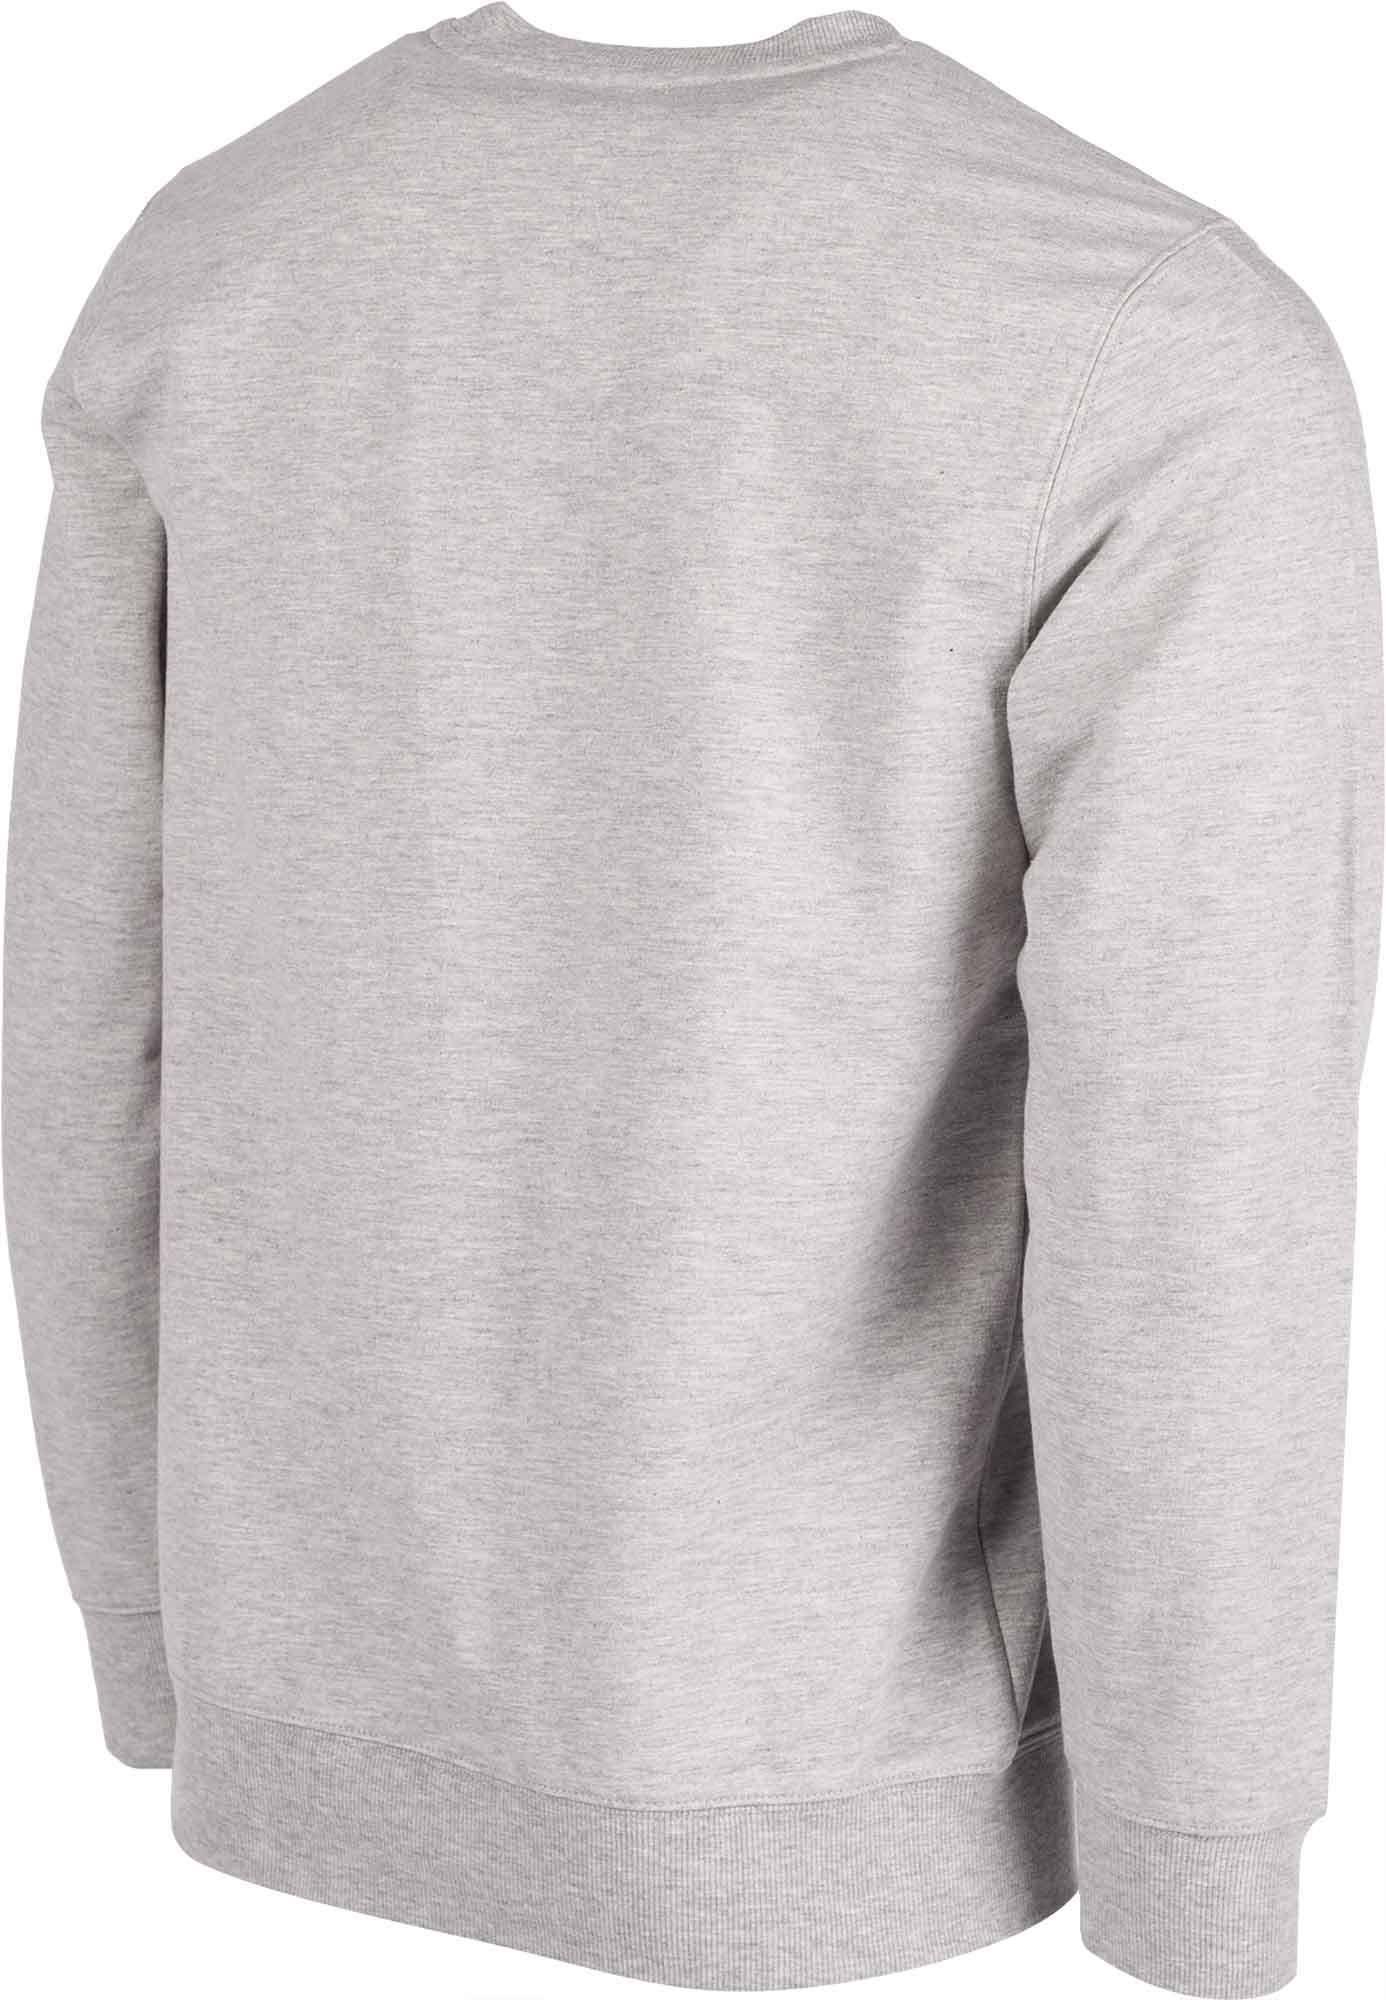 Men's sweatshirt